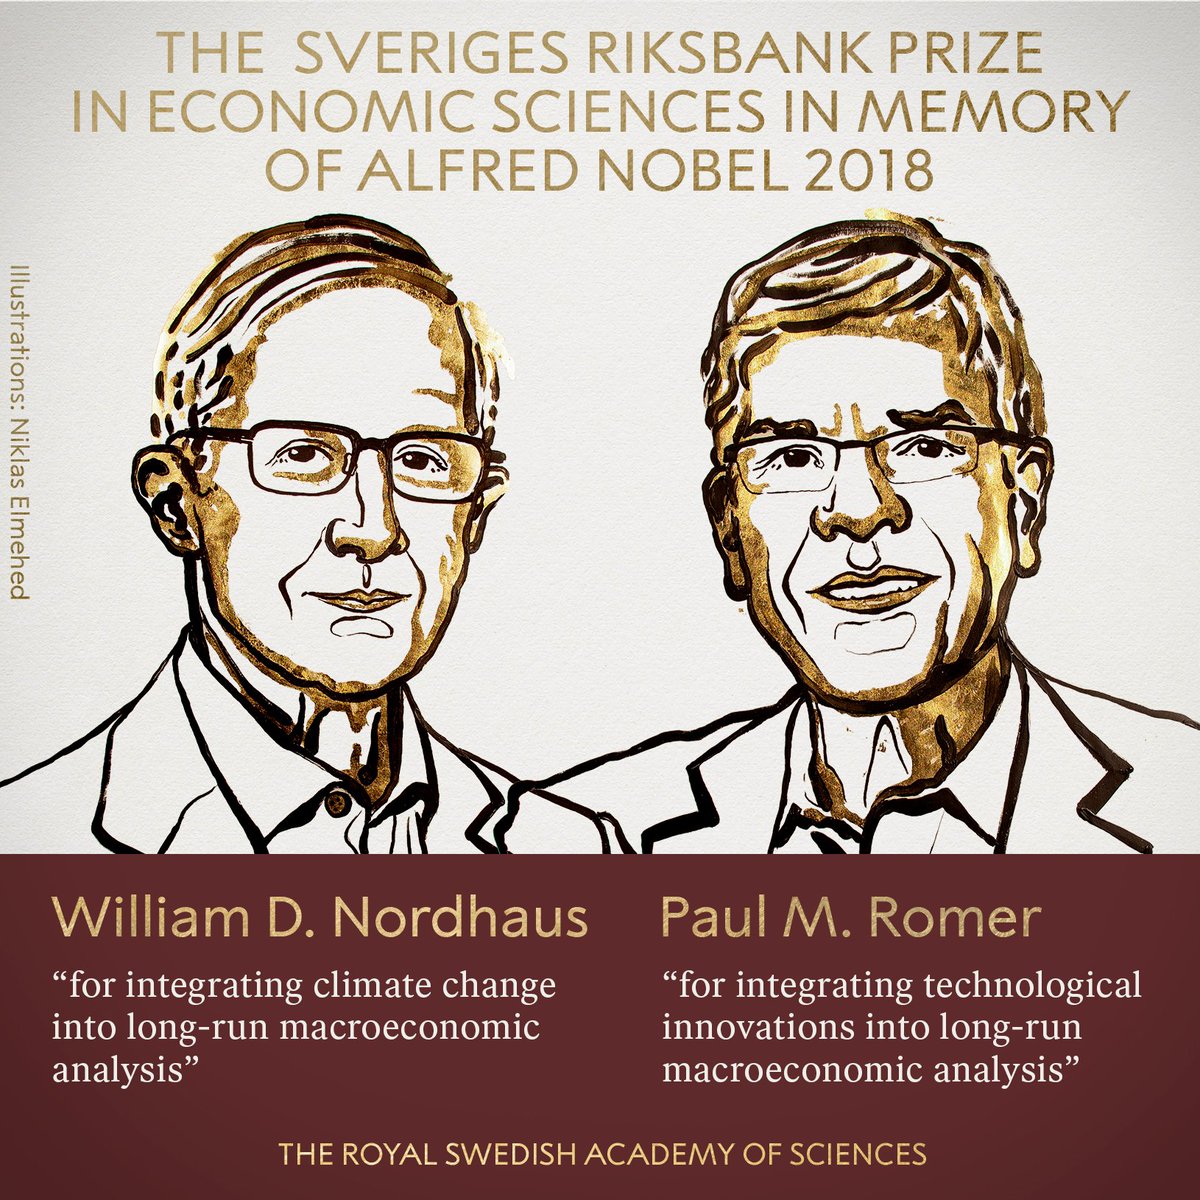 William Nordhaus and Paul Romer